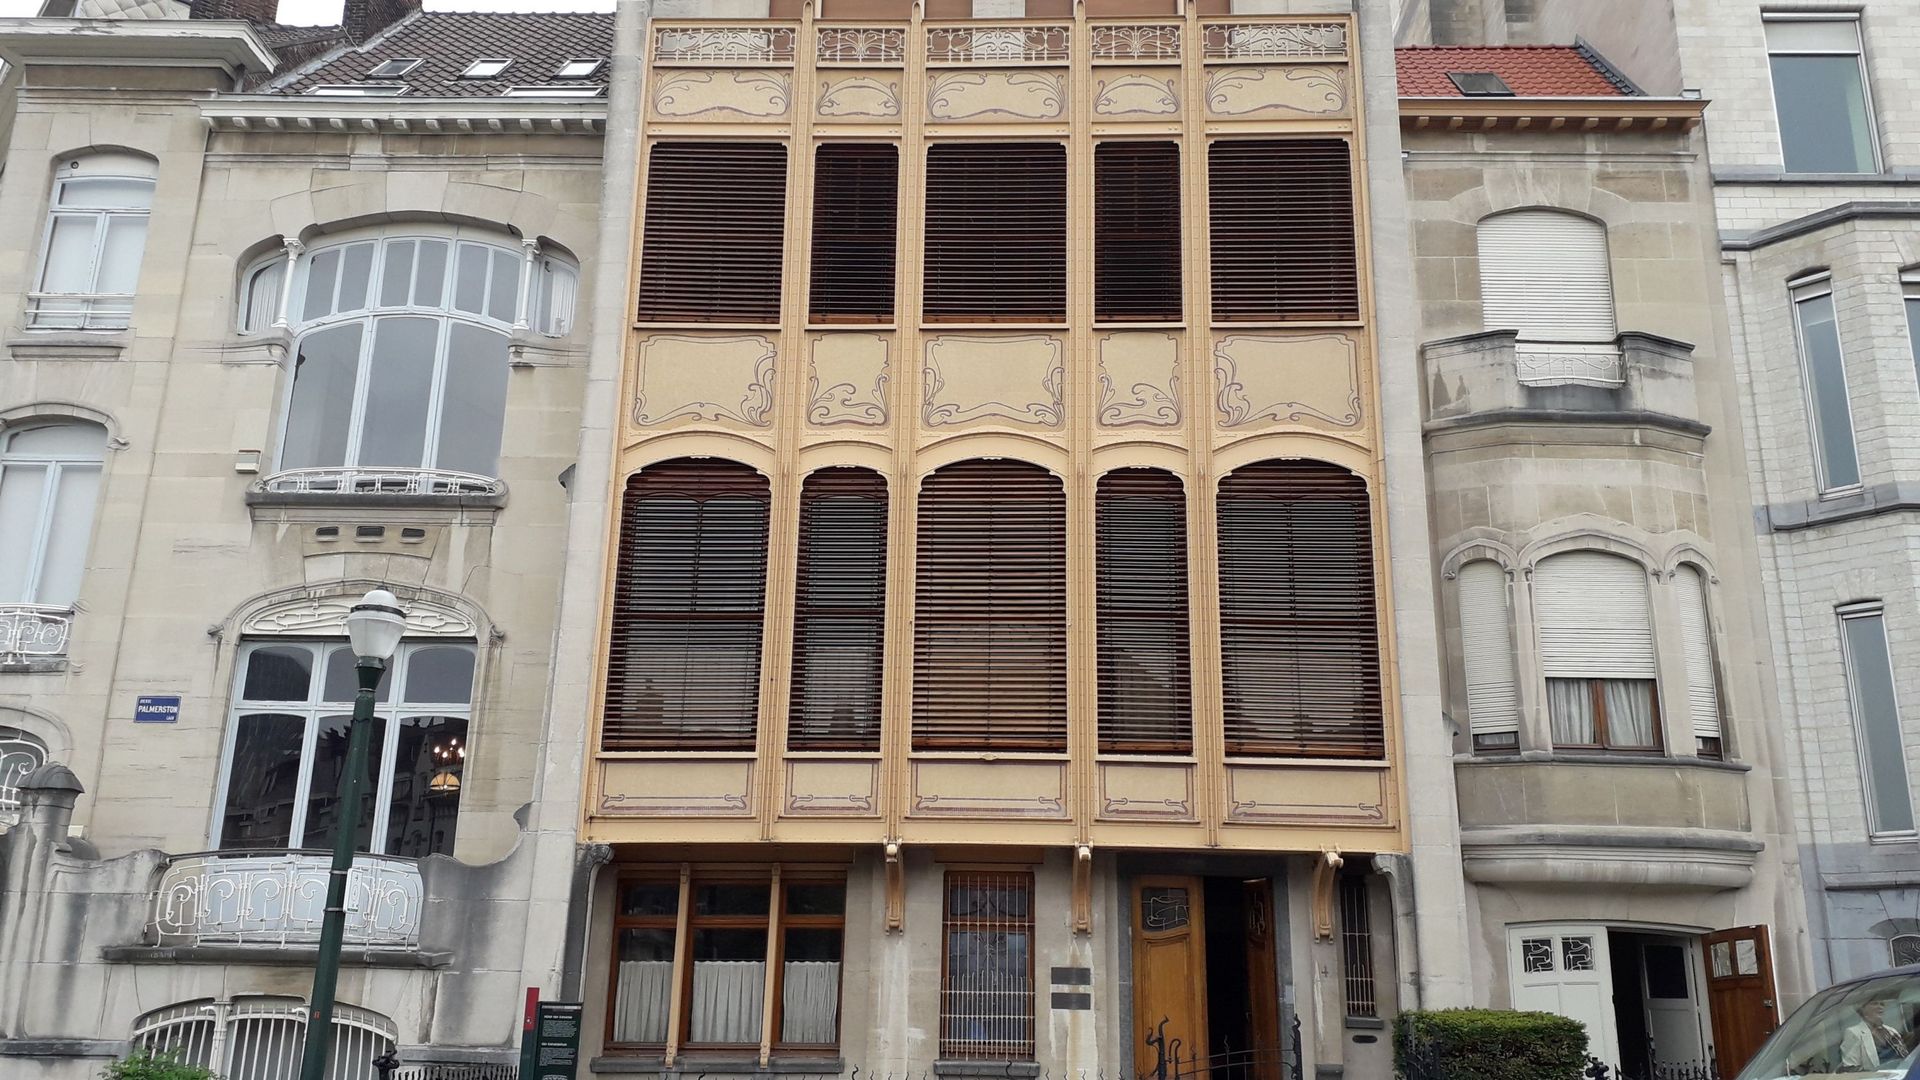 Hôtel Van Eetvelde, façades